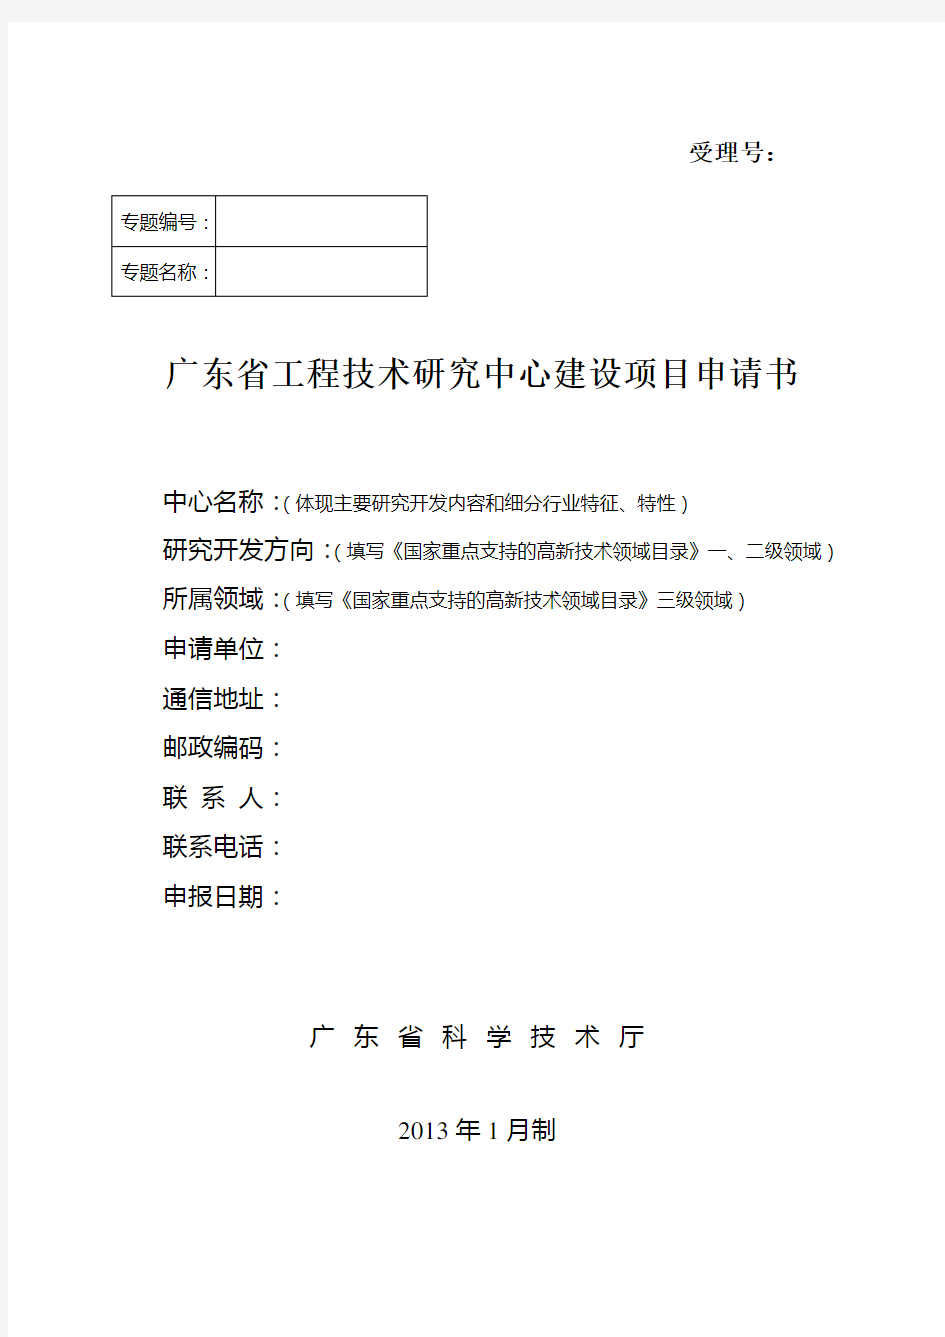 广东省工程技术研究中心建设项目申请书详解